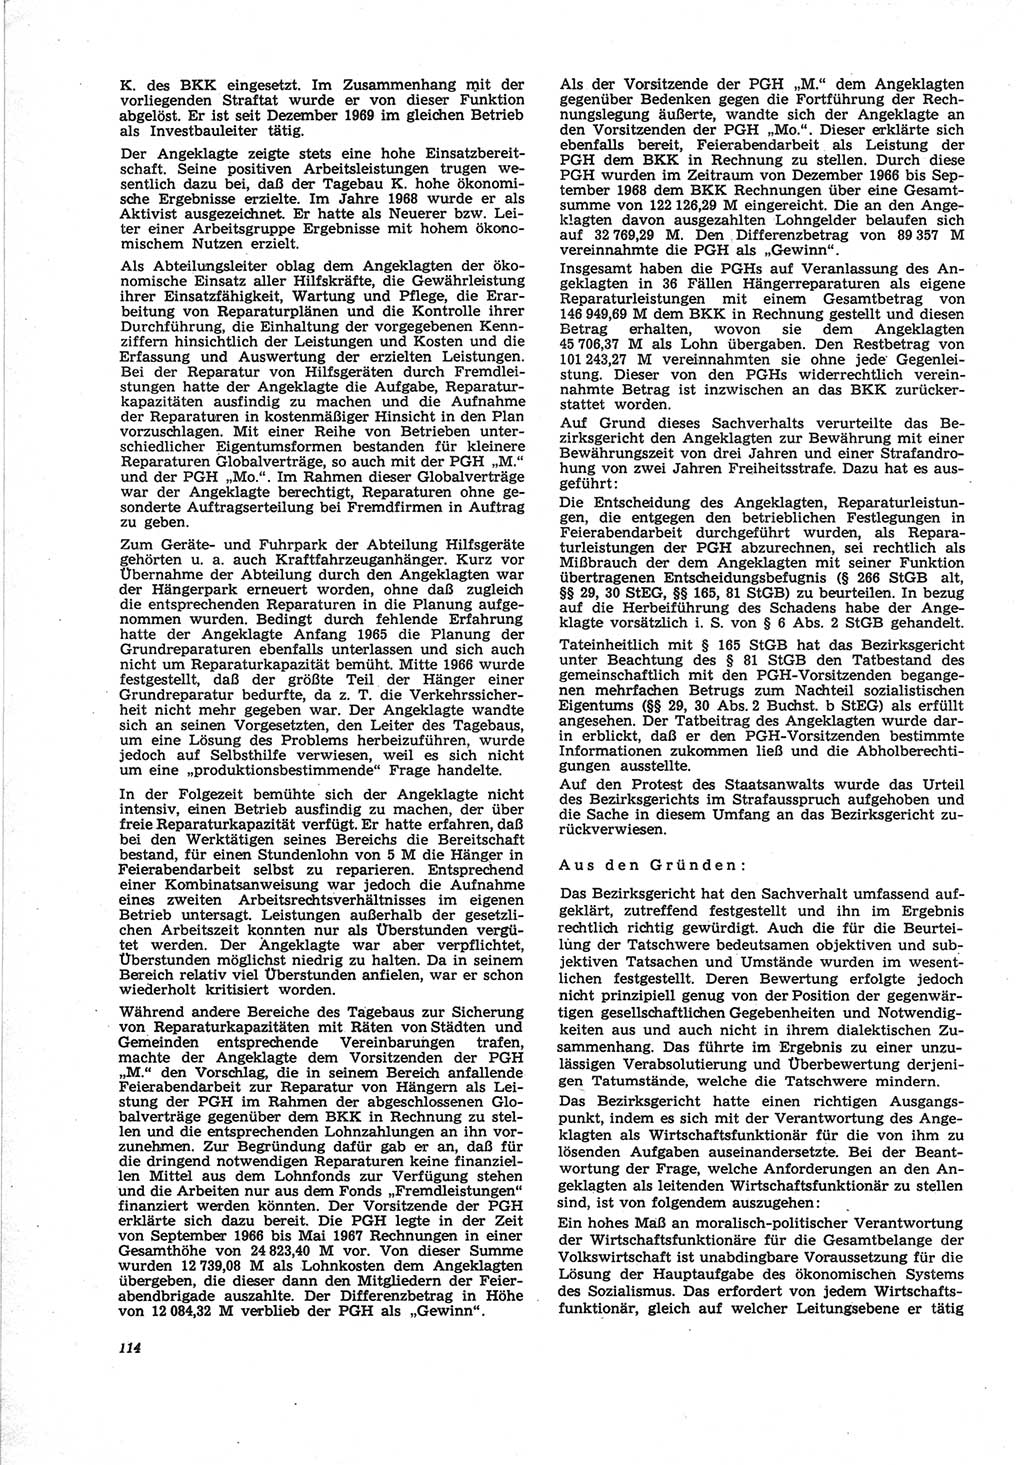 Neue Justiz (NJ), Zeitschrift für Recht und Rechtswissenschaft [Deutsche Demokratische Republik (DDR)], 25. Jahrgang 1971, Seite 114 (NJ DDR 1971, S. 114)